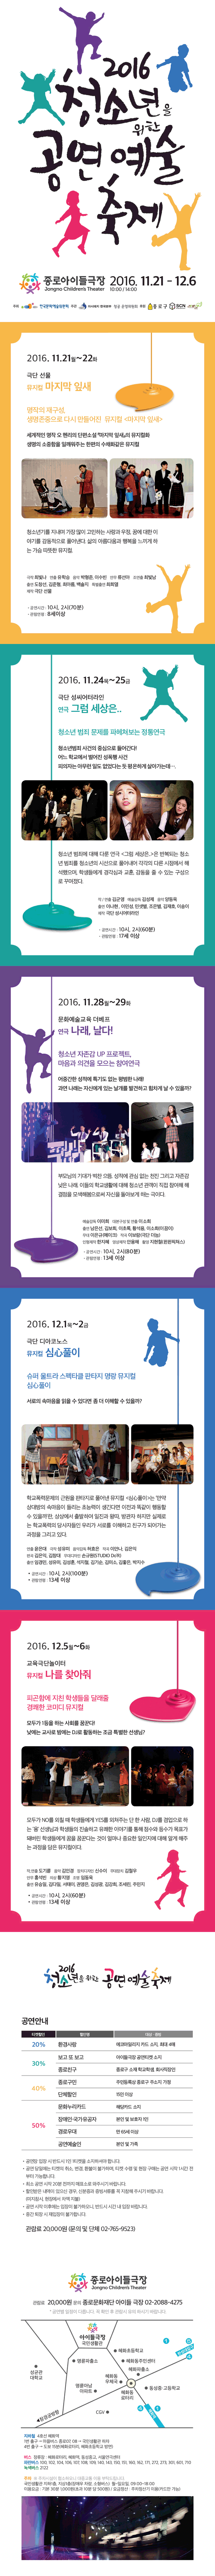 2016 청소년을 위한 공연예술축제 종로아이들극장 2016.11.21.-12.6 10:00/14:00